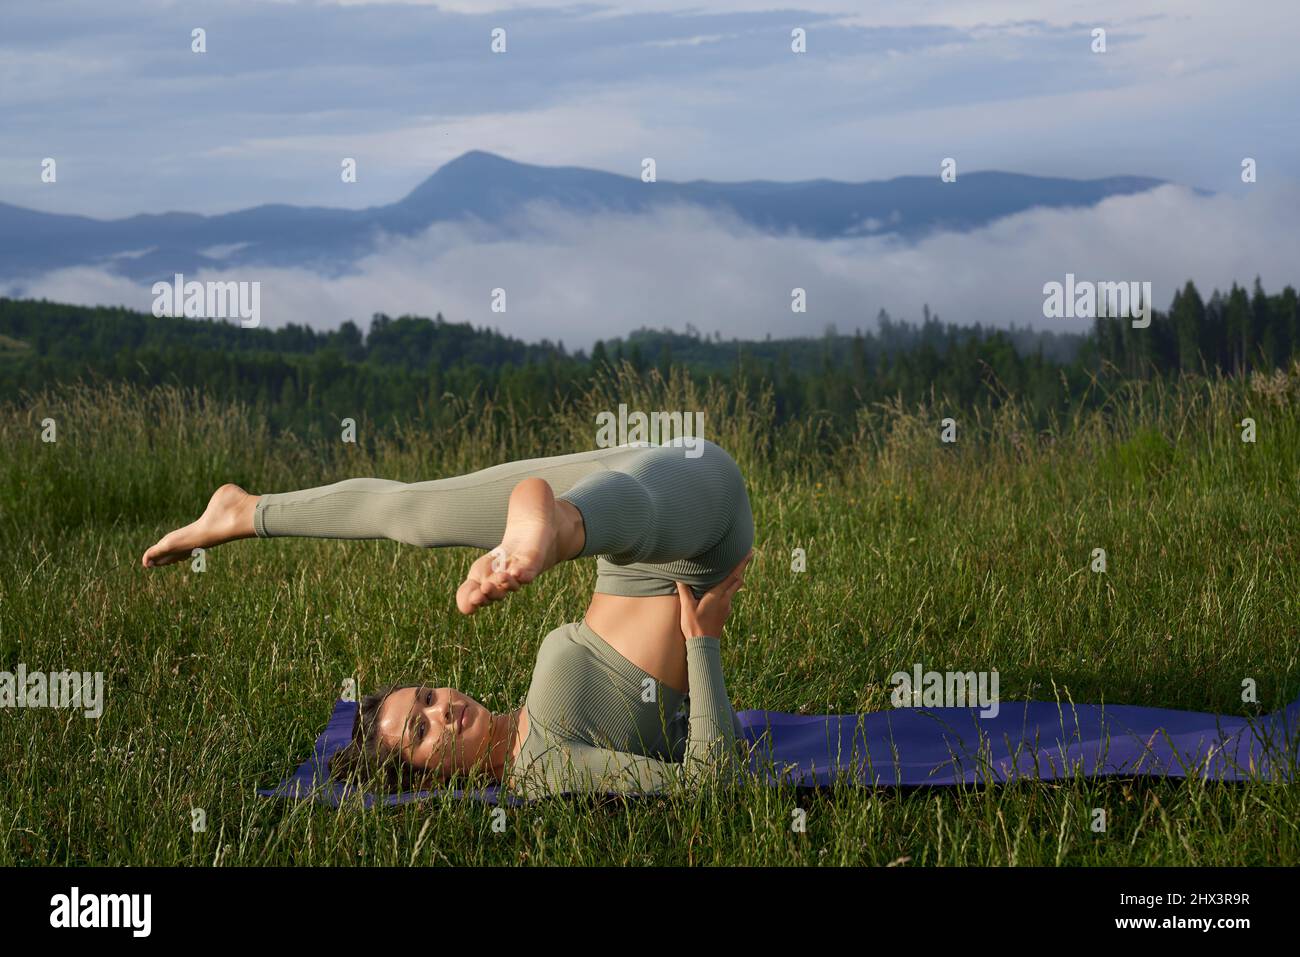 Sportliche junge Frau in grüner aktiver Kleidung, die auf Matte unter grünen Bergen Akro-Yoga macht. Hübsche Dame, die sich durch regelmäßiges Training an der frischen Luft um den Körper kümmert. Stockfoto